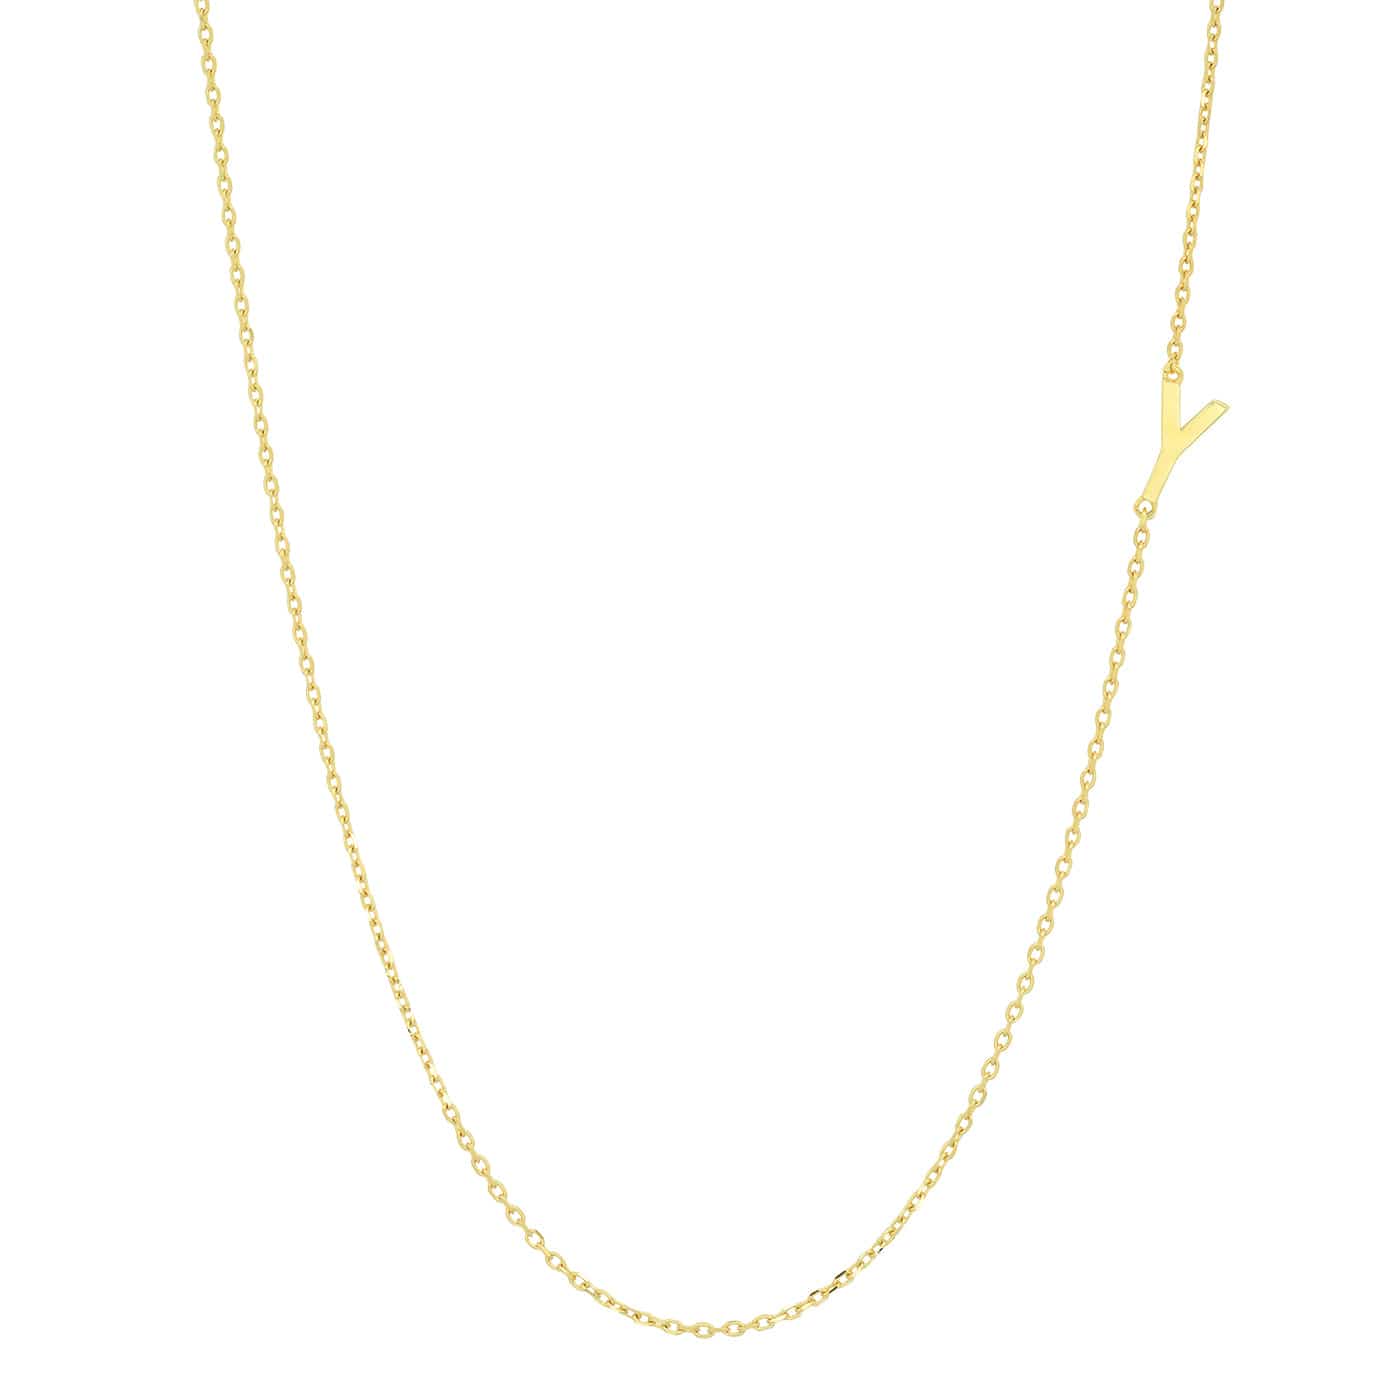 TAI JEWELRY Necklace Y 14k Sideways Monogram Necklace